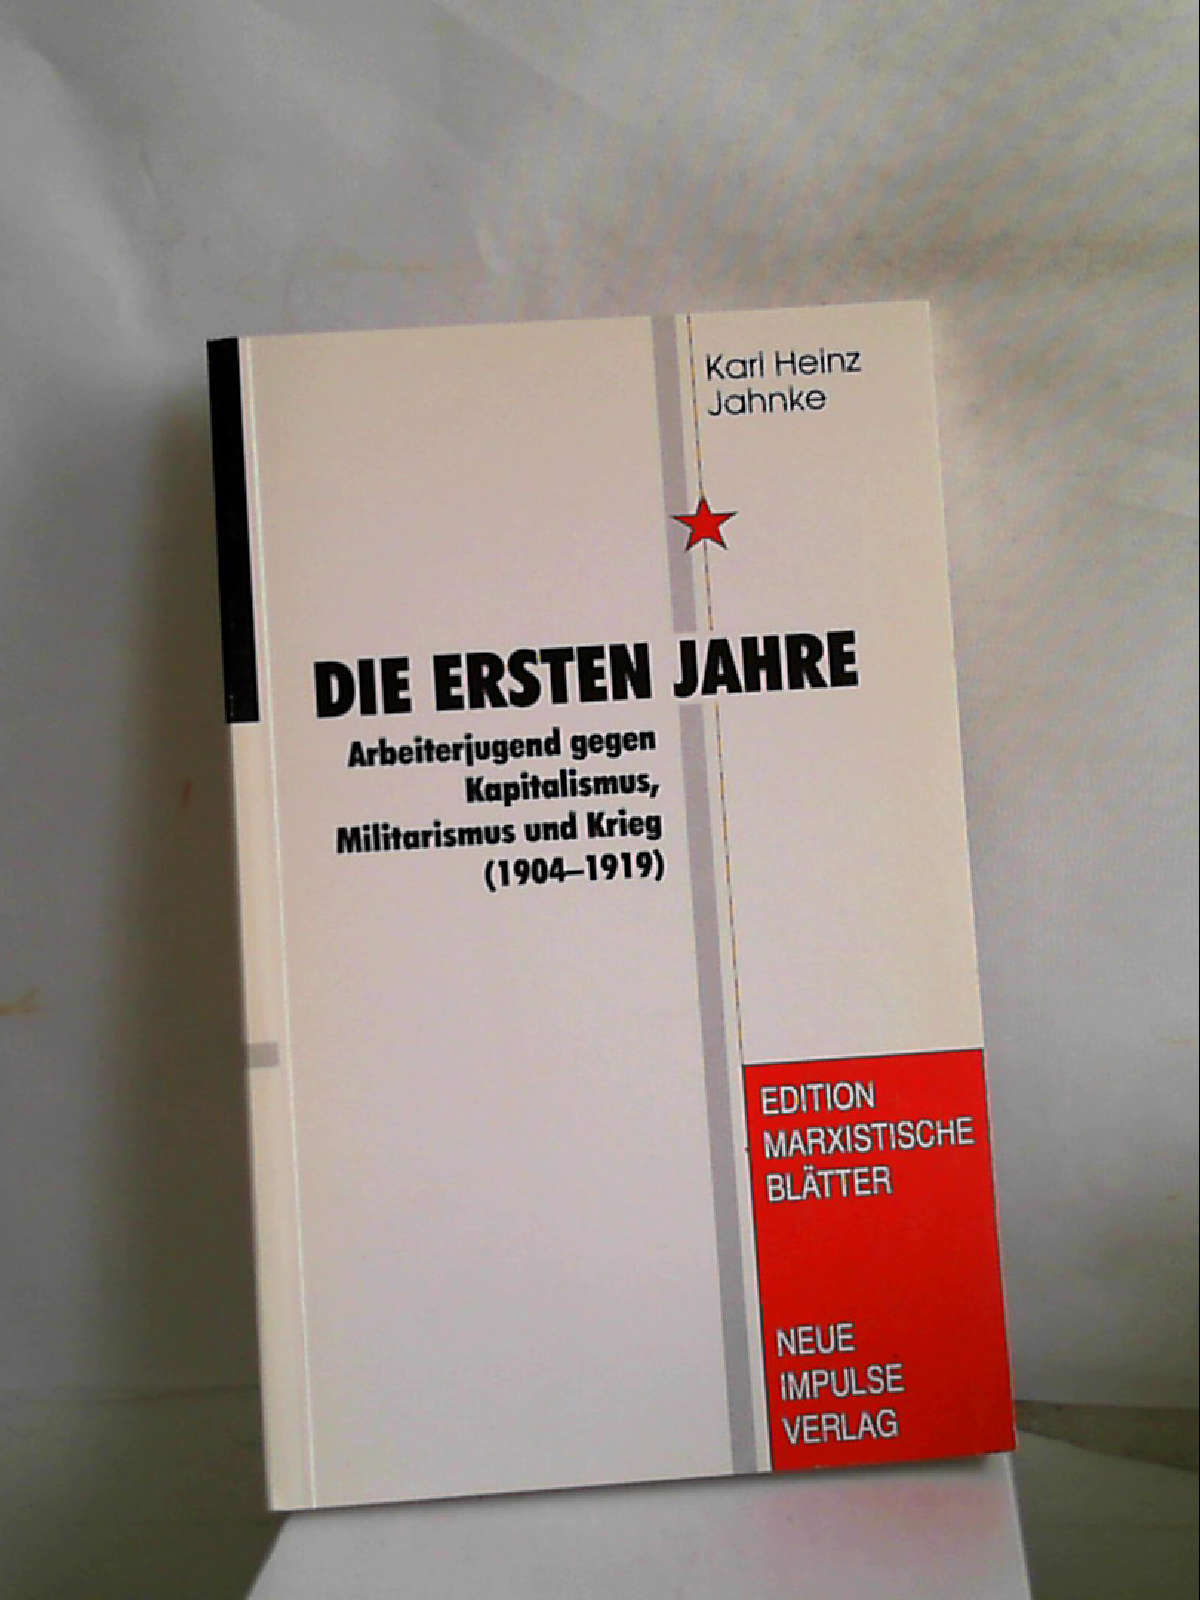 Die ersten Jahre: Arbeiterjugend gegen Kapitalismus, Militarismus und Krieg (1904-1919) [Perfect Paperback] Karl Heinz Jahnke - Karl Heinz Jahnke